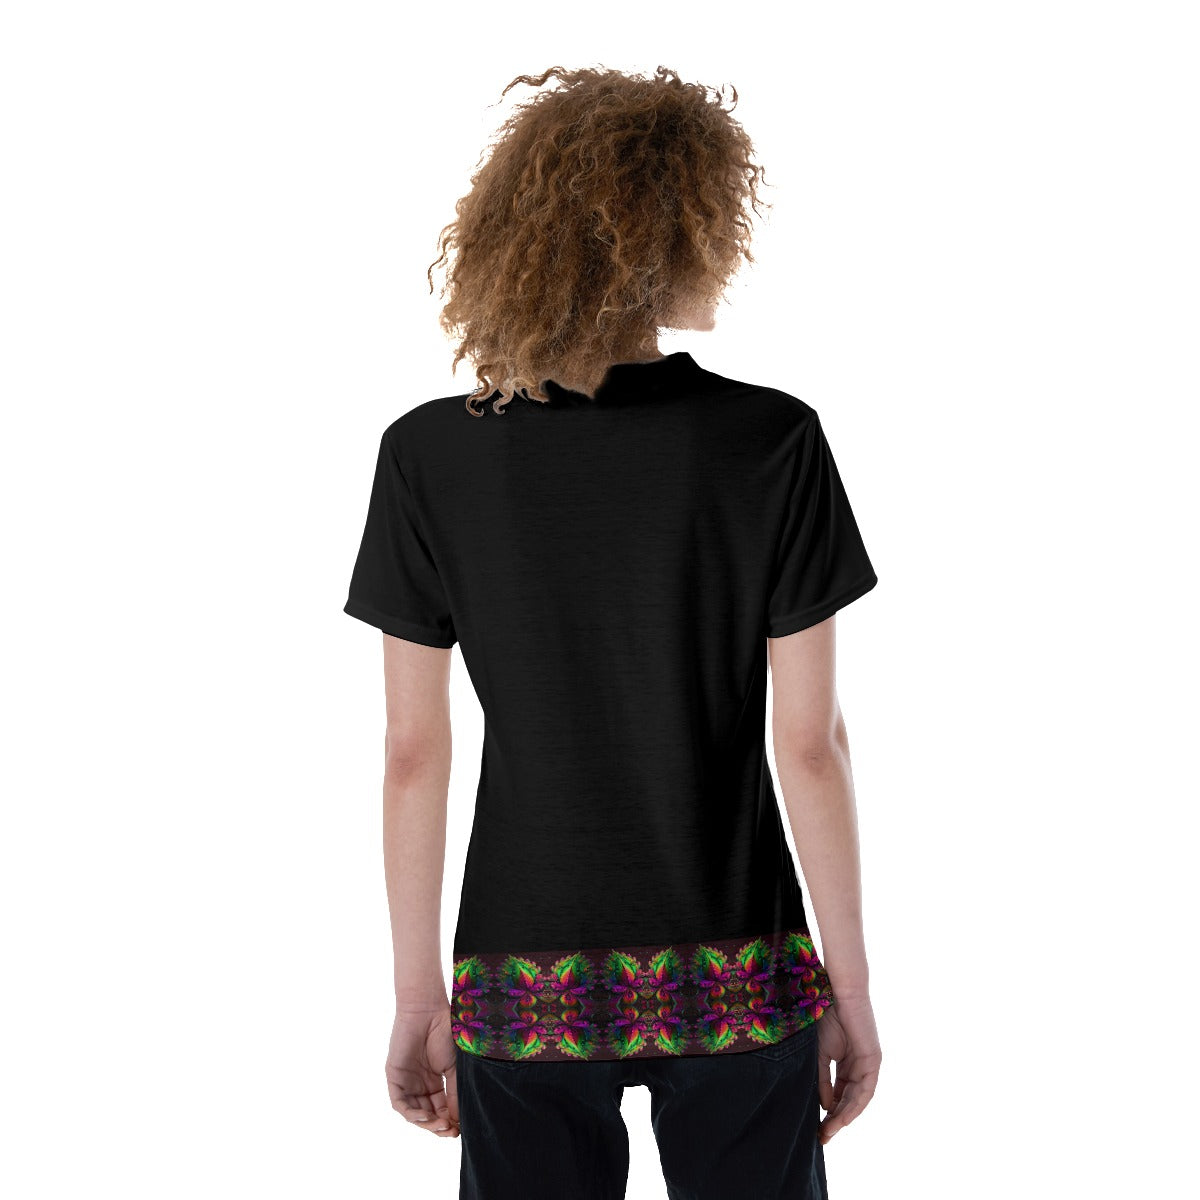 Toucan Print V-neck Women's T-shirt